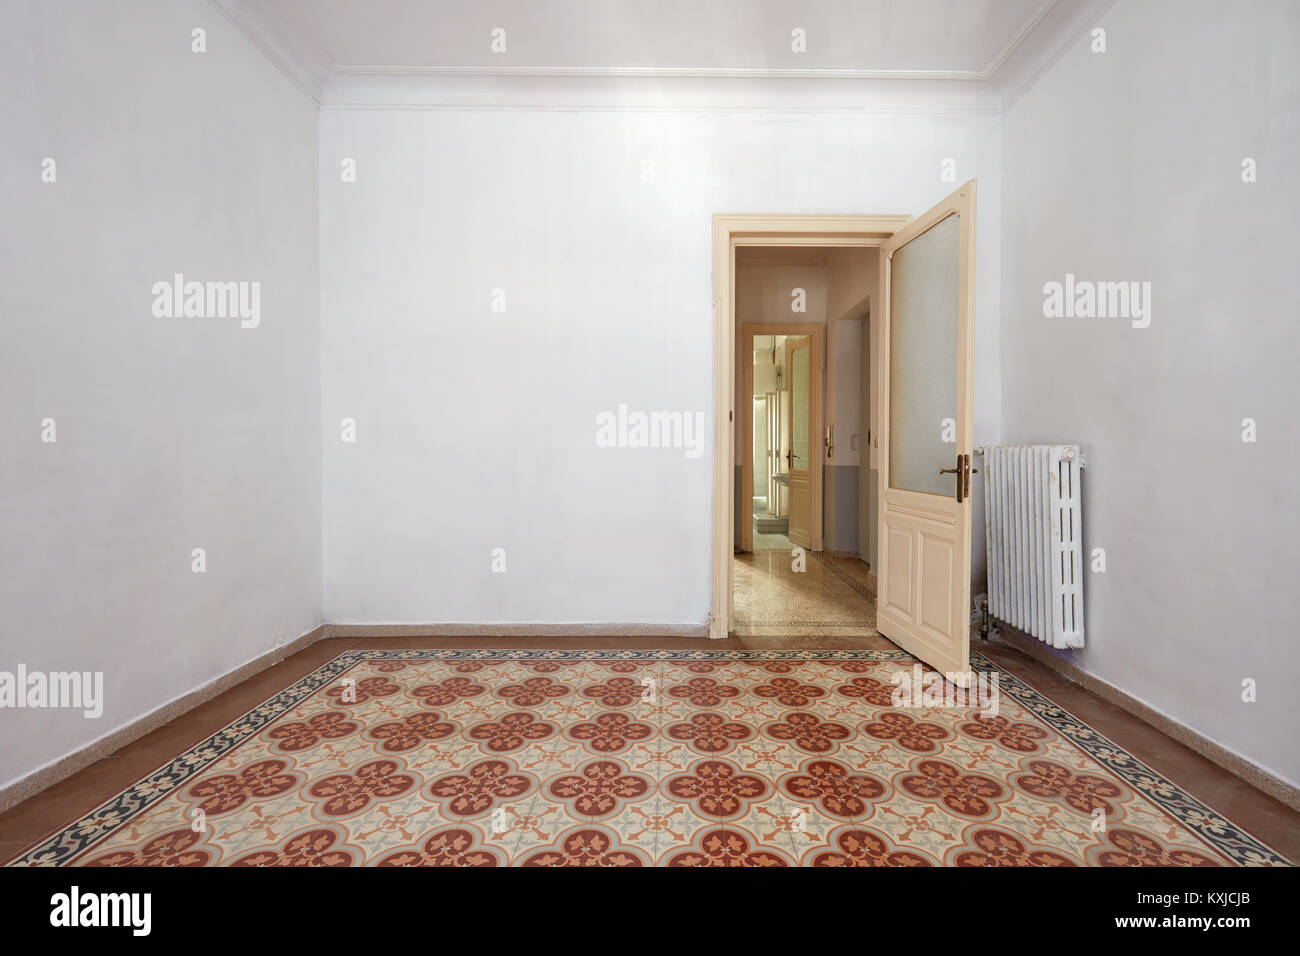 Empty room interior with ancient tiled floor and wooden door Stock Photo